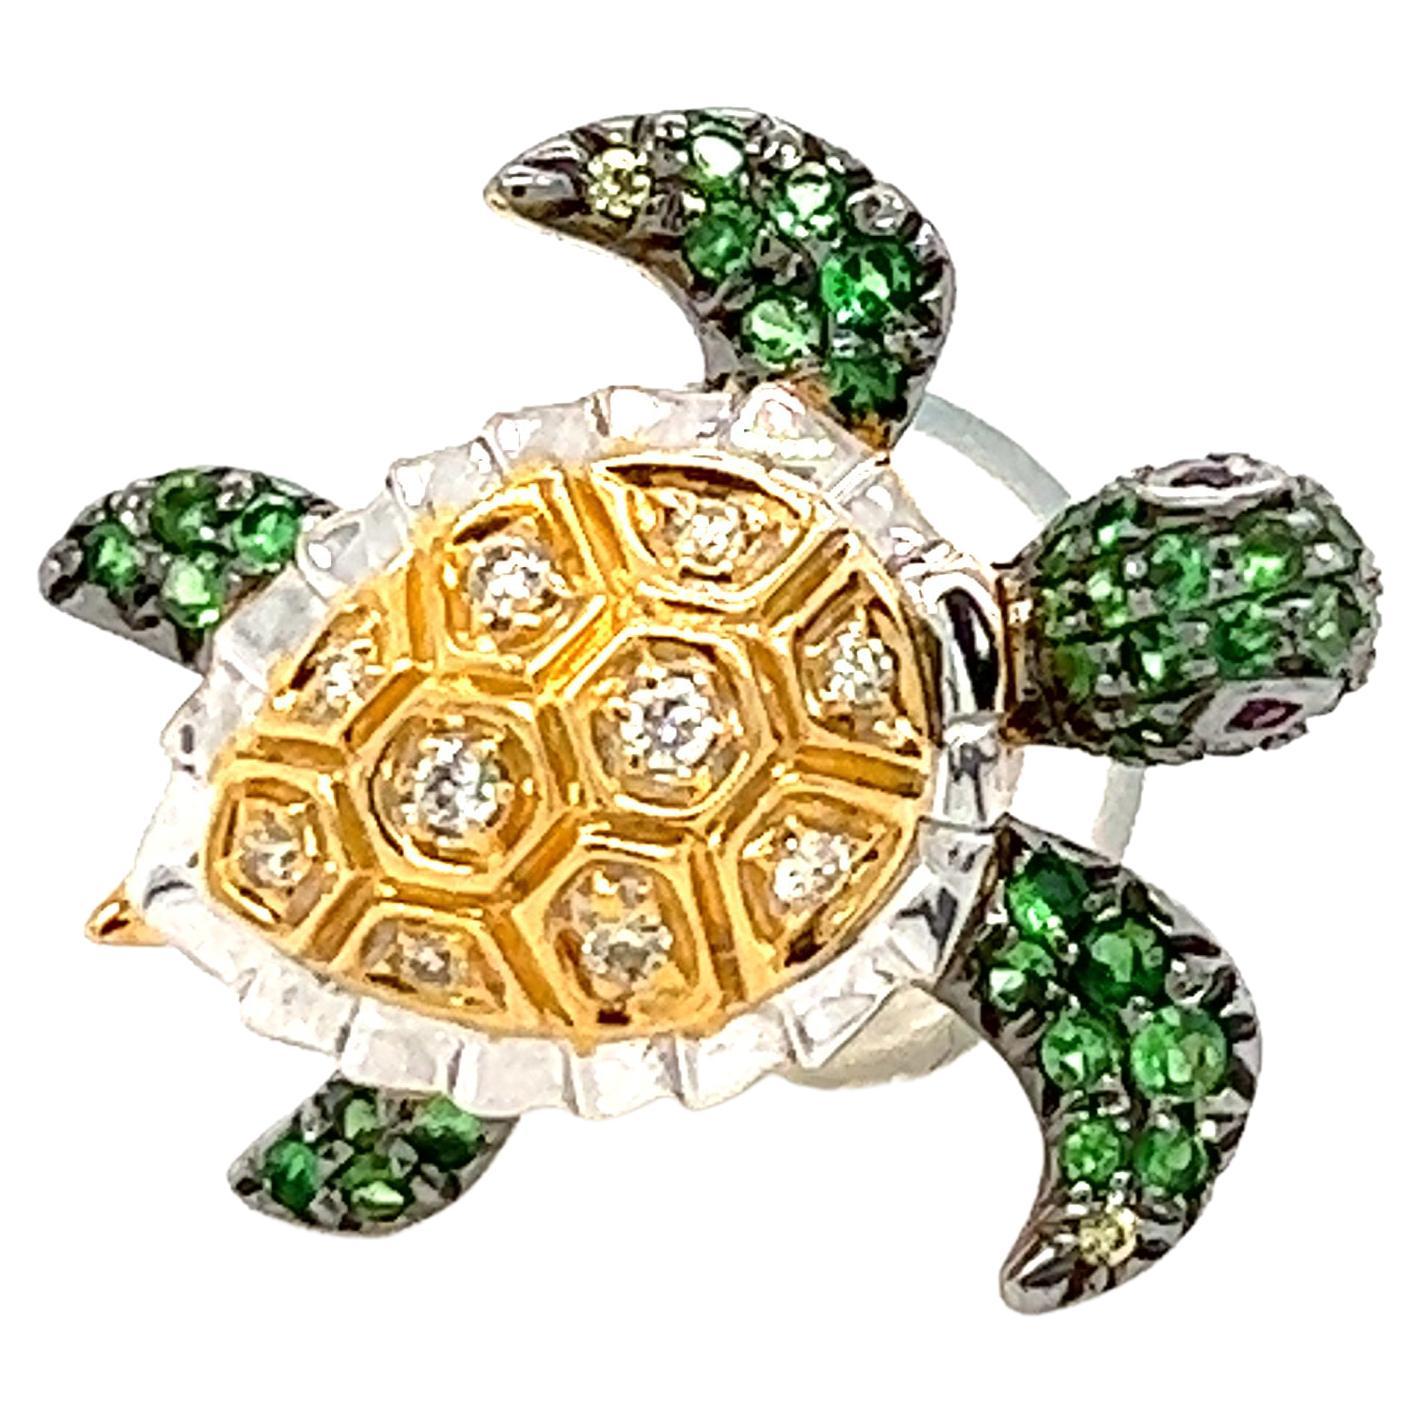 Brosche aus 18 Karat Schildkrötenschildkröte, gemischt farbiger Diamant und grüner Granat